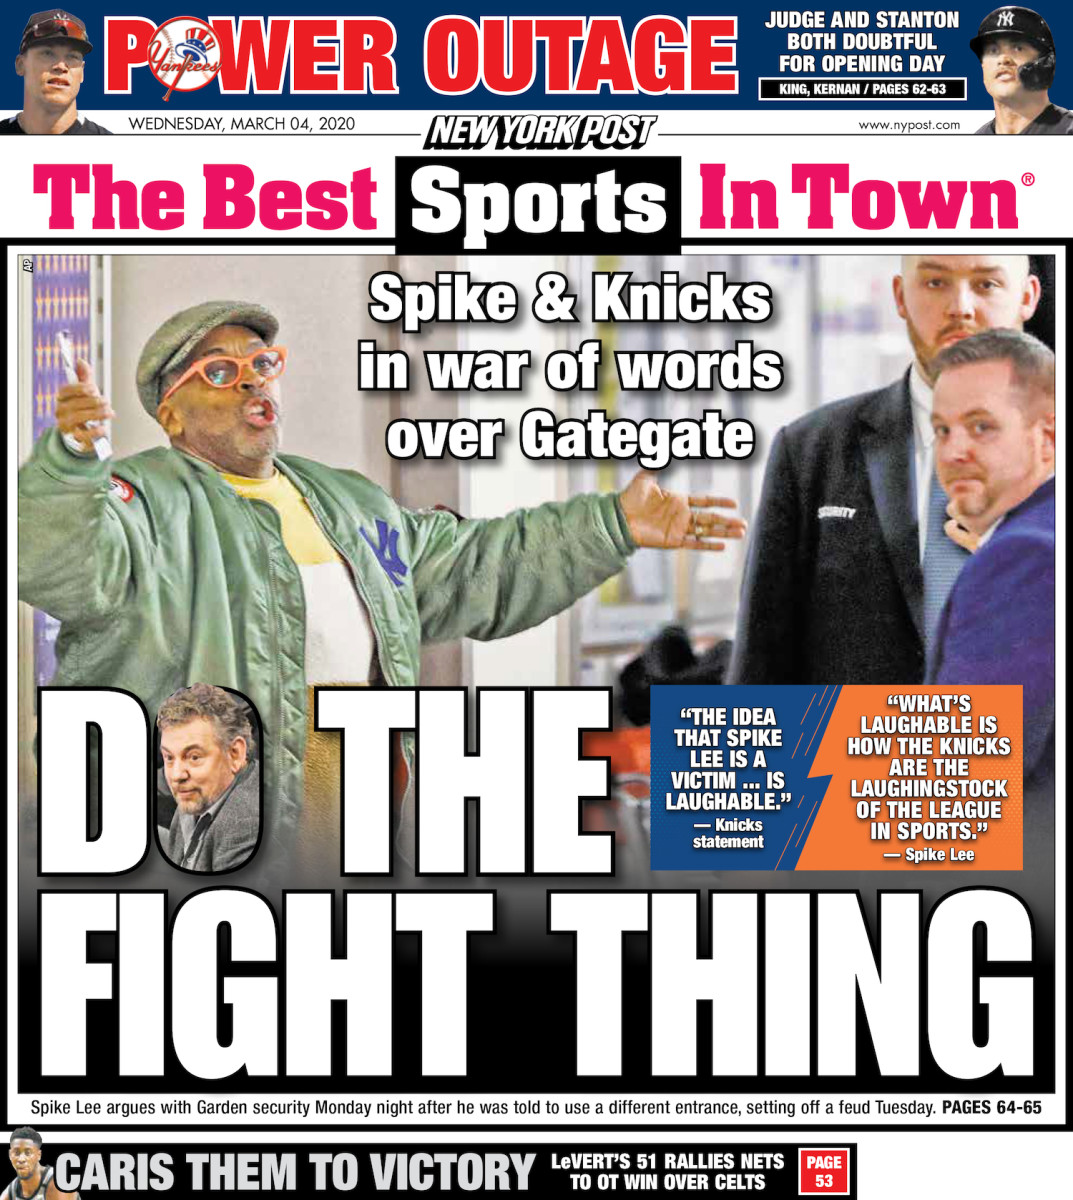 Spike Lee Rocks Up To A New York Knicks Game Dressed Like A Women's Handbag